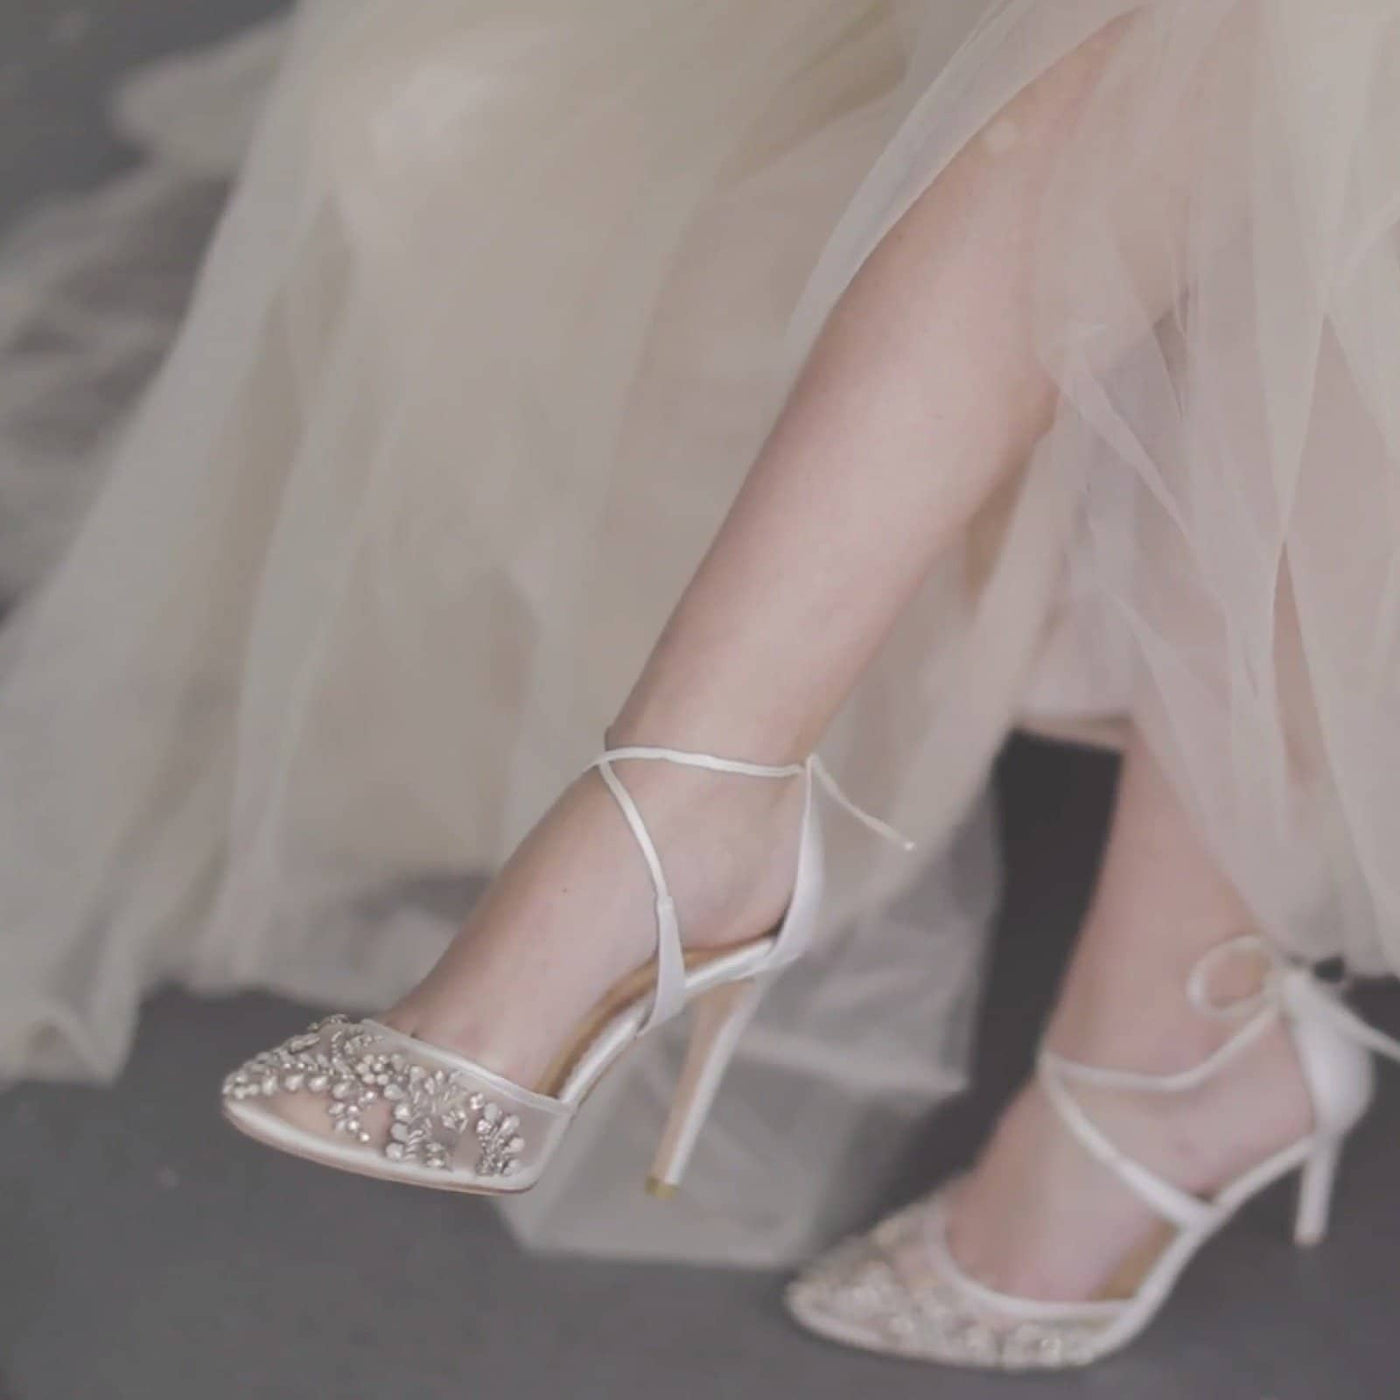 Florence Embellished Crystal Wedding Heels in Ivory